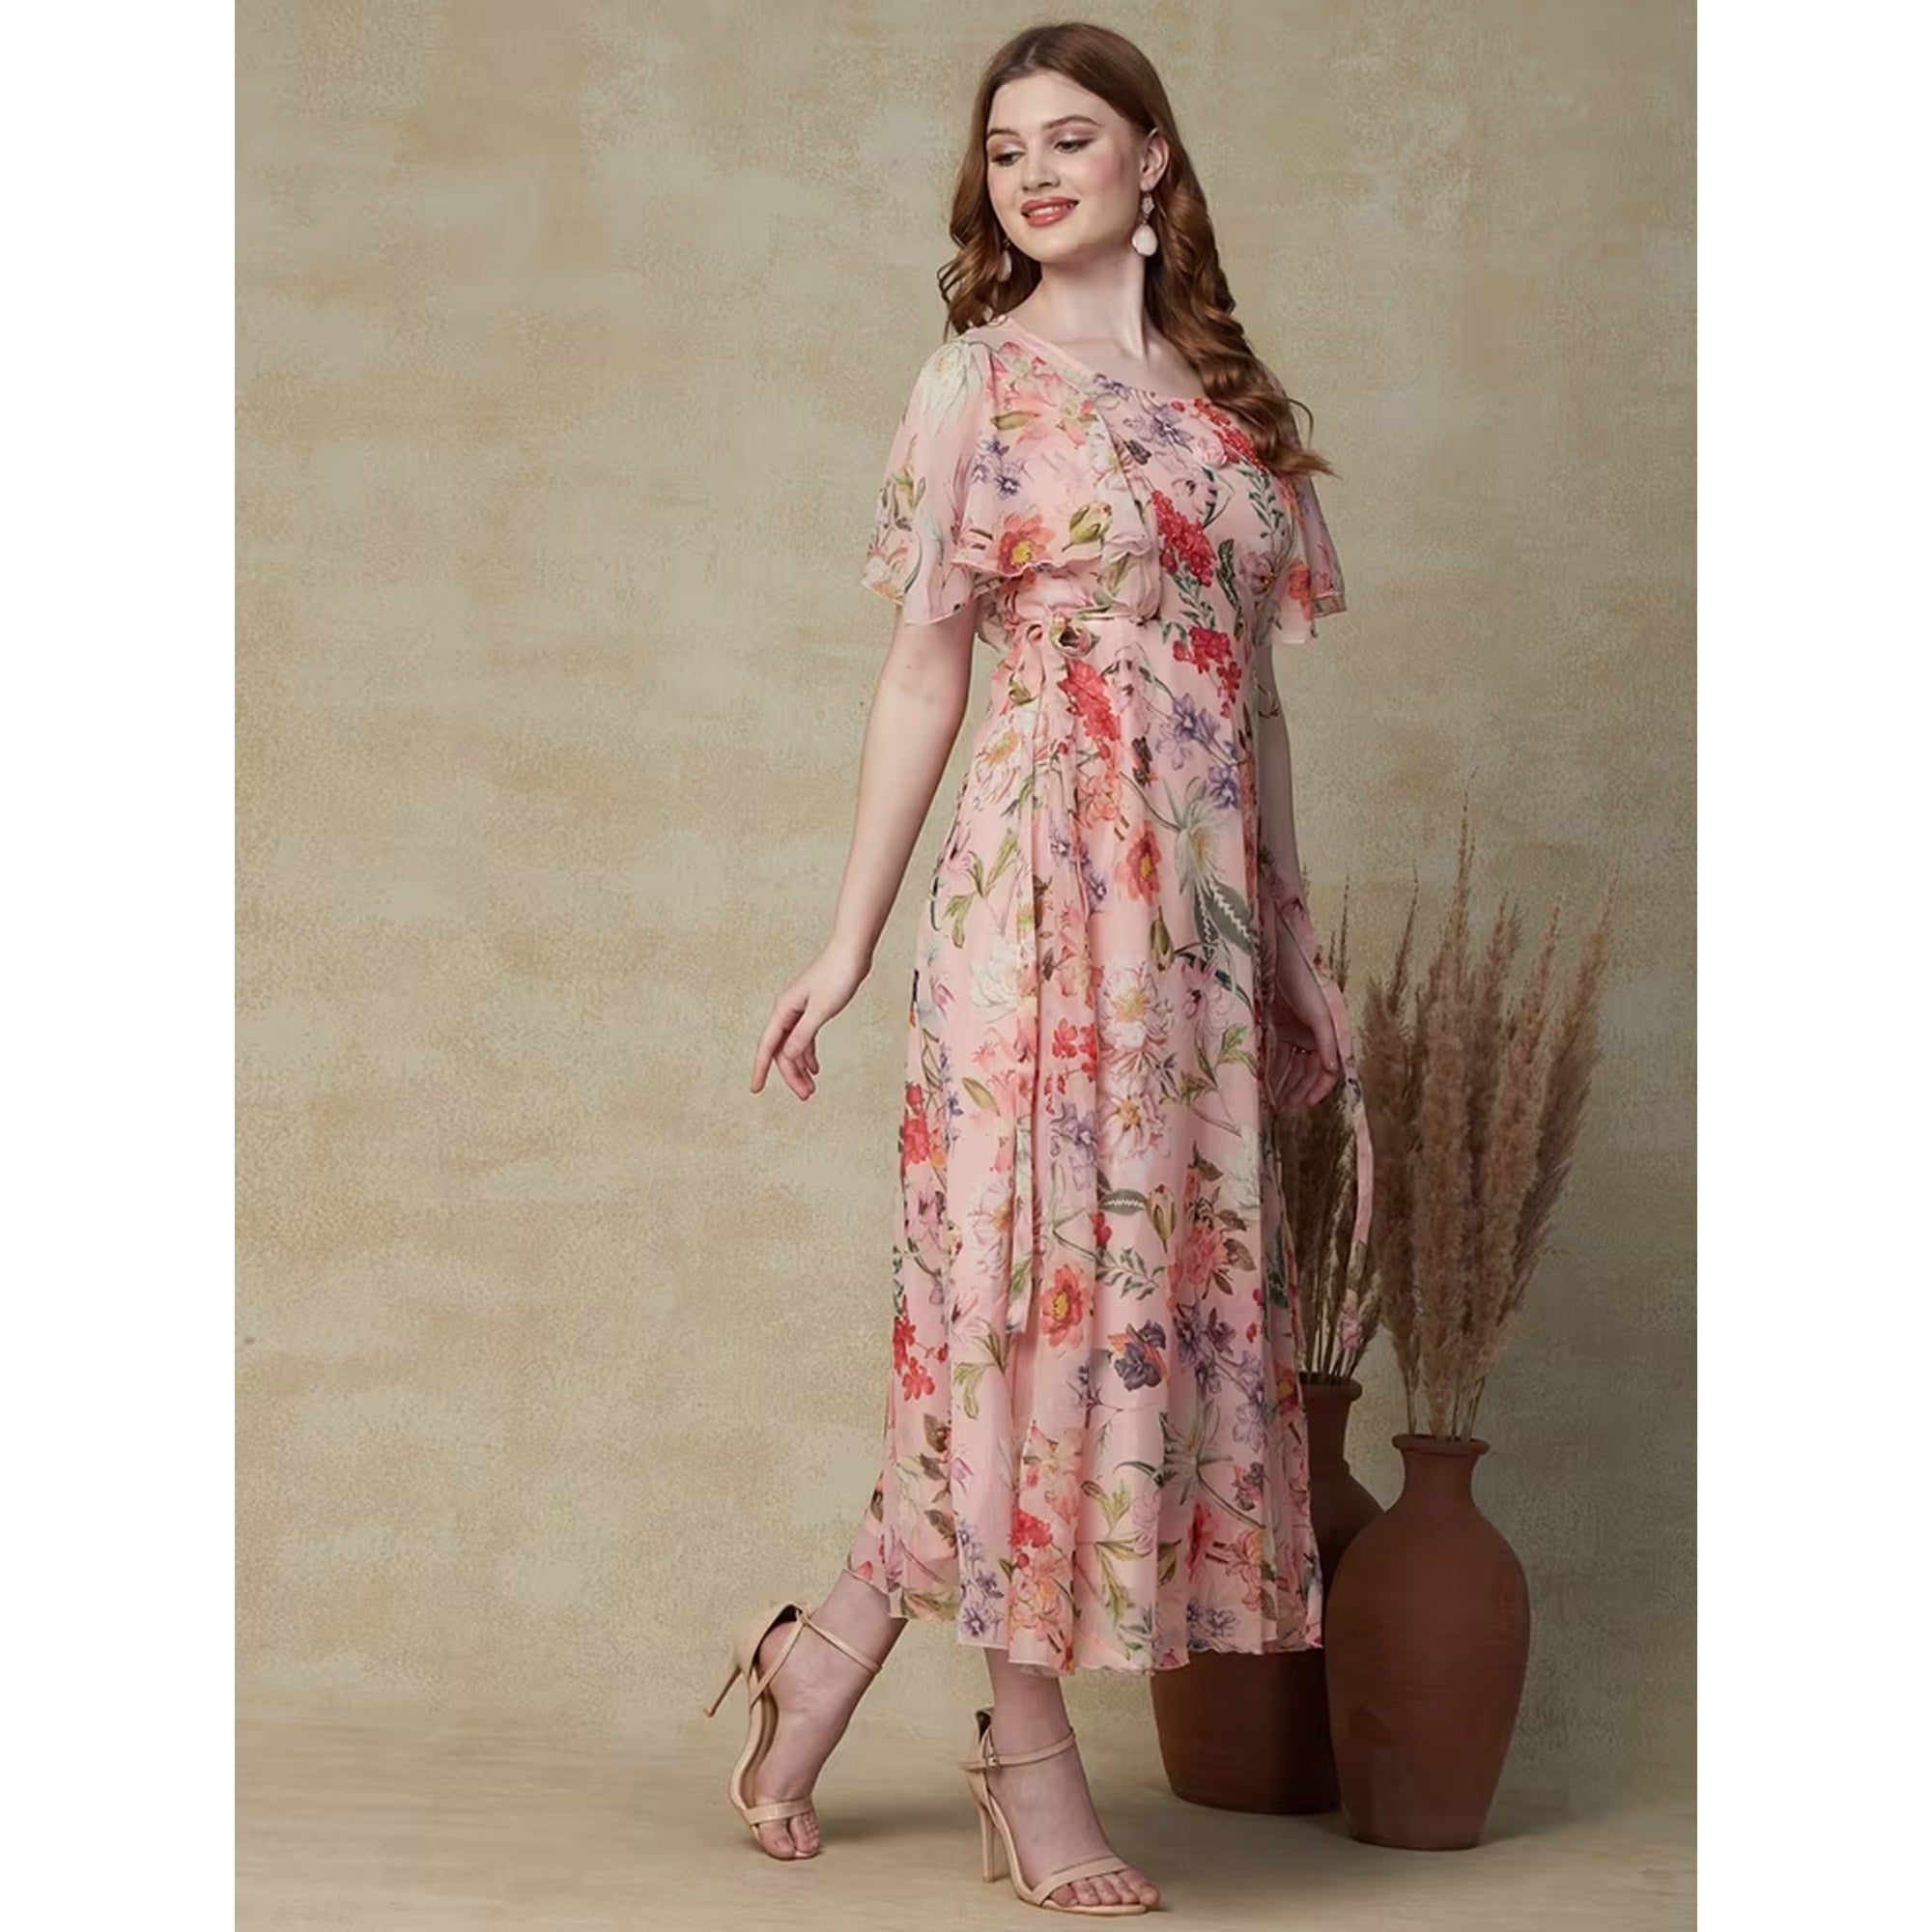 Peach Floral Printed A-Line Chiffon Dress